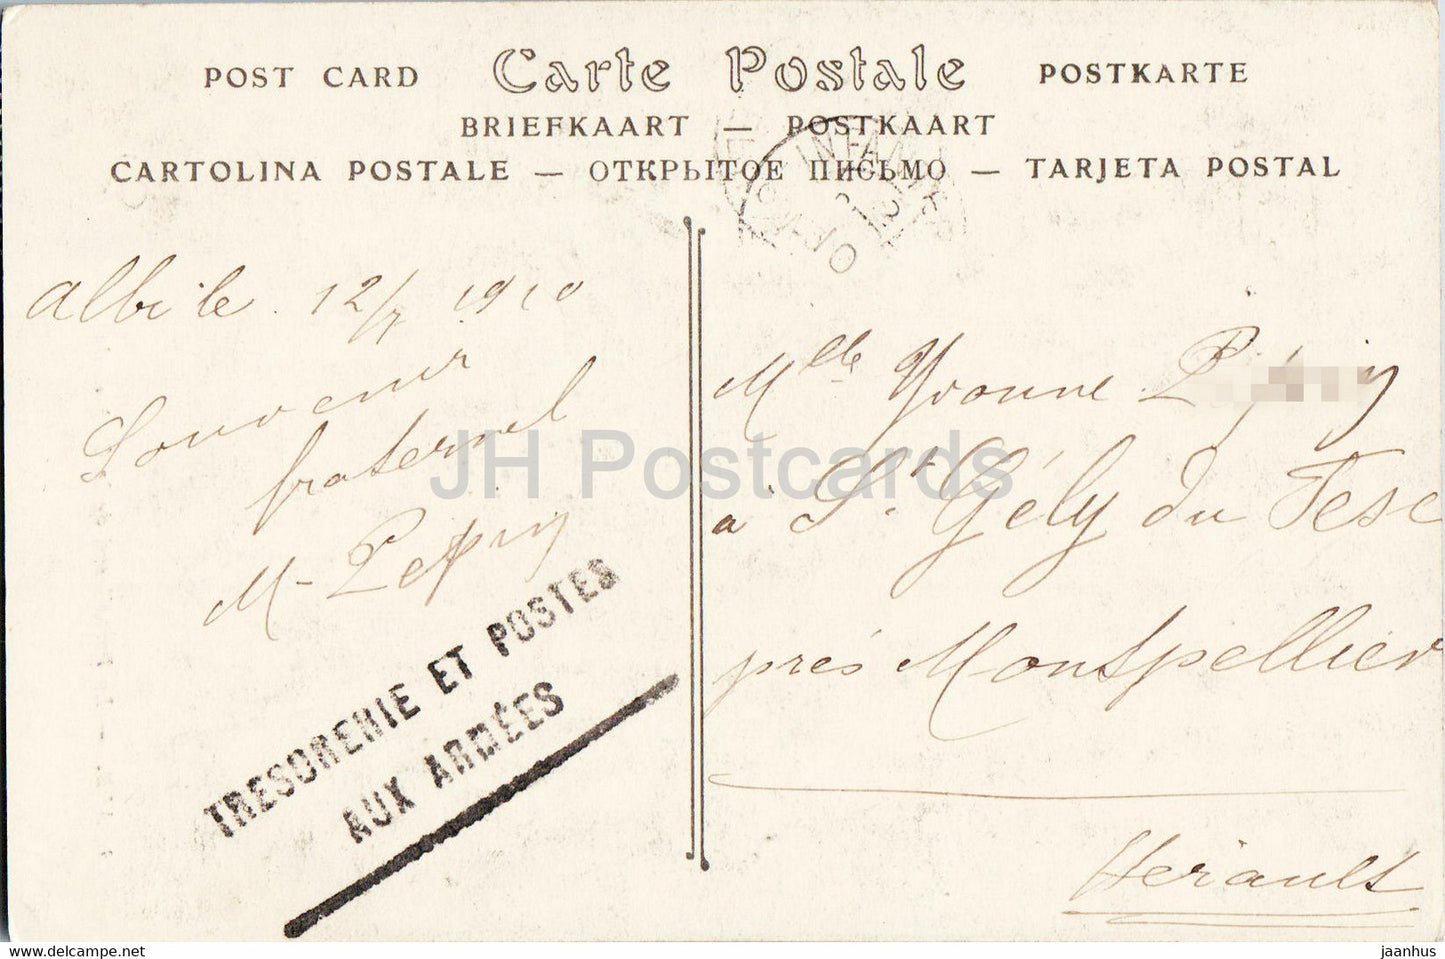 Albi - Le Portail sud de la Cathédrale - 7 - cathédrale - carte postale ancienne - 1910 - France - occasion